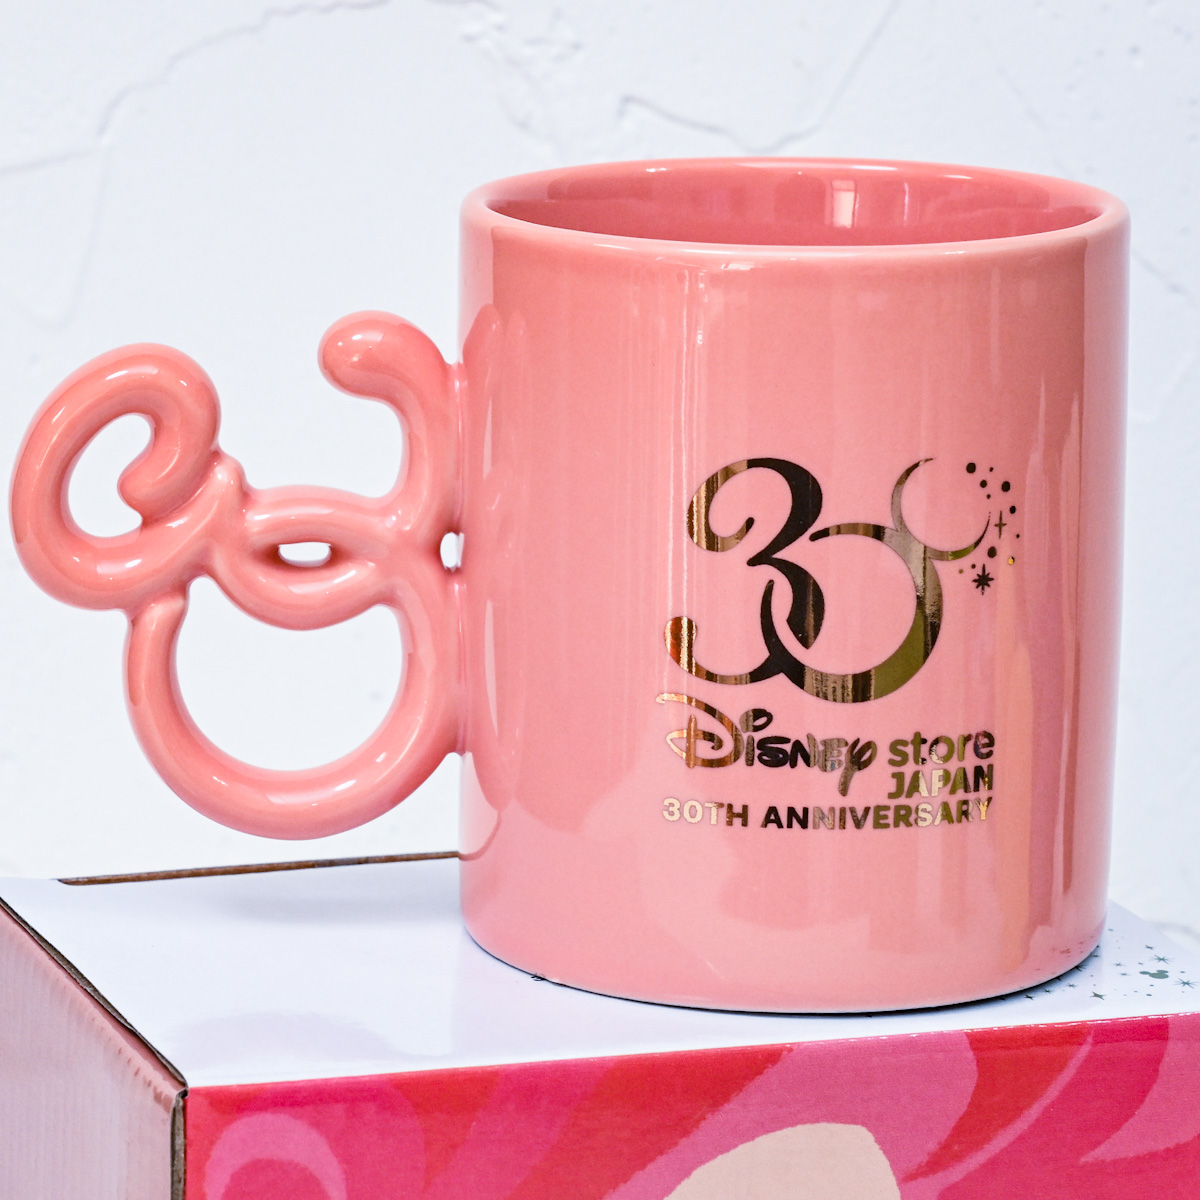 アリエル マグカップ Disney Store Japan 30th Anniversary　バックデザイン